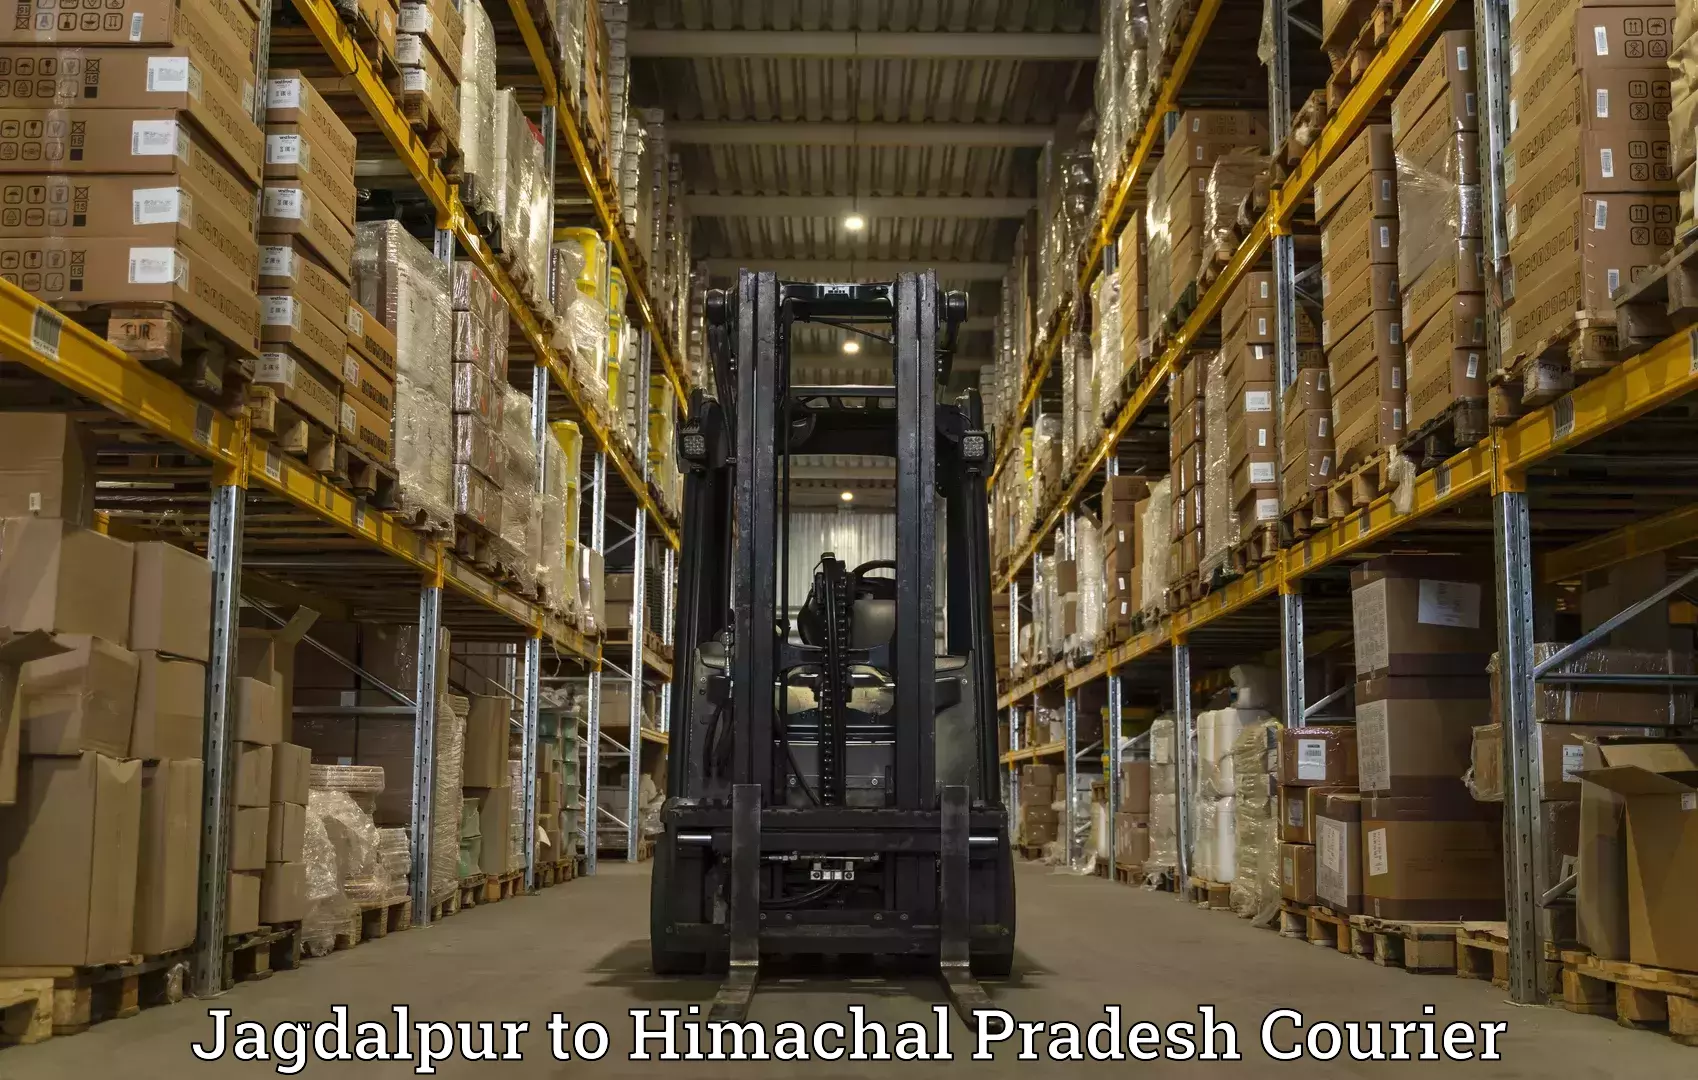 Express logistics providers Jagdalpur to Waknaghat